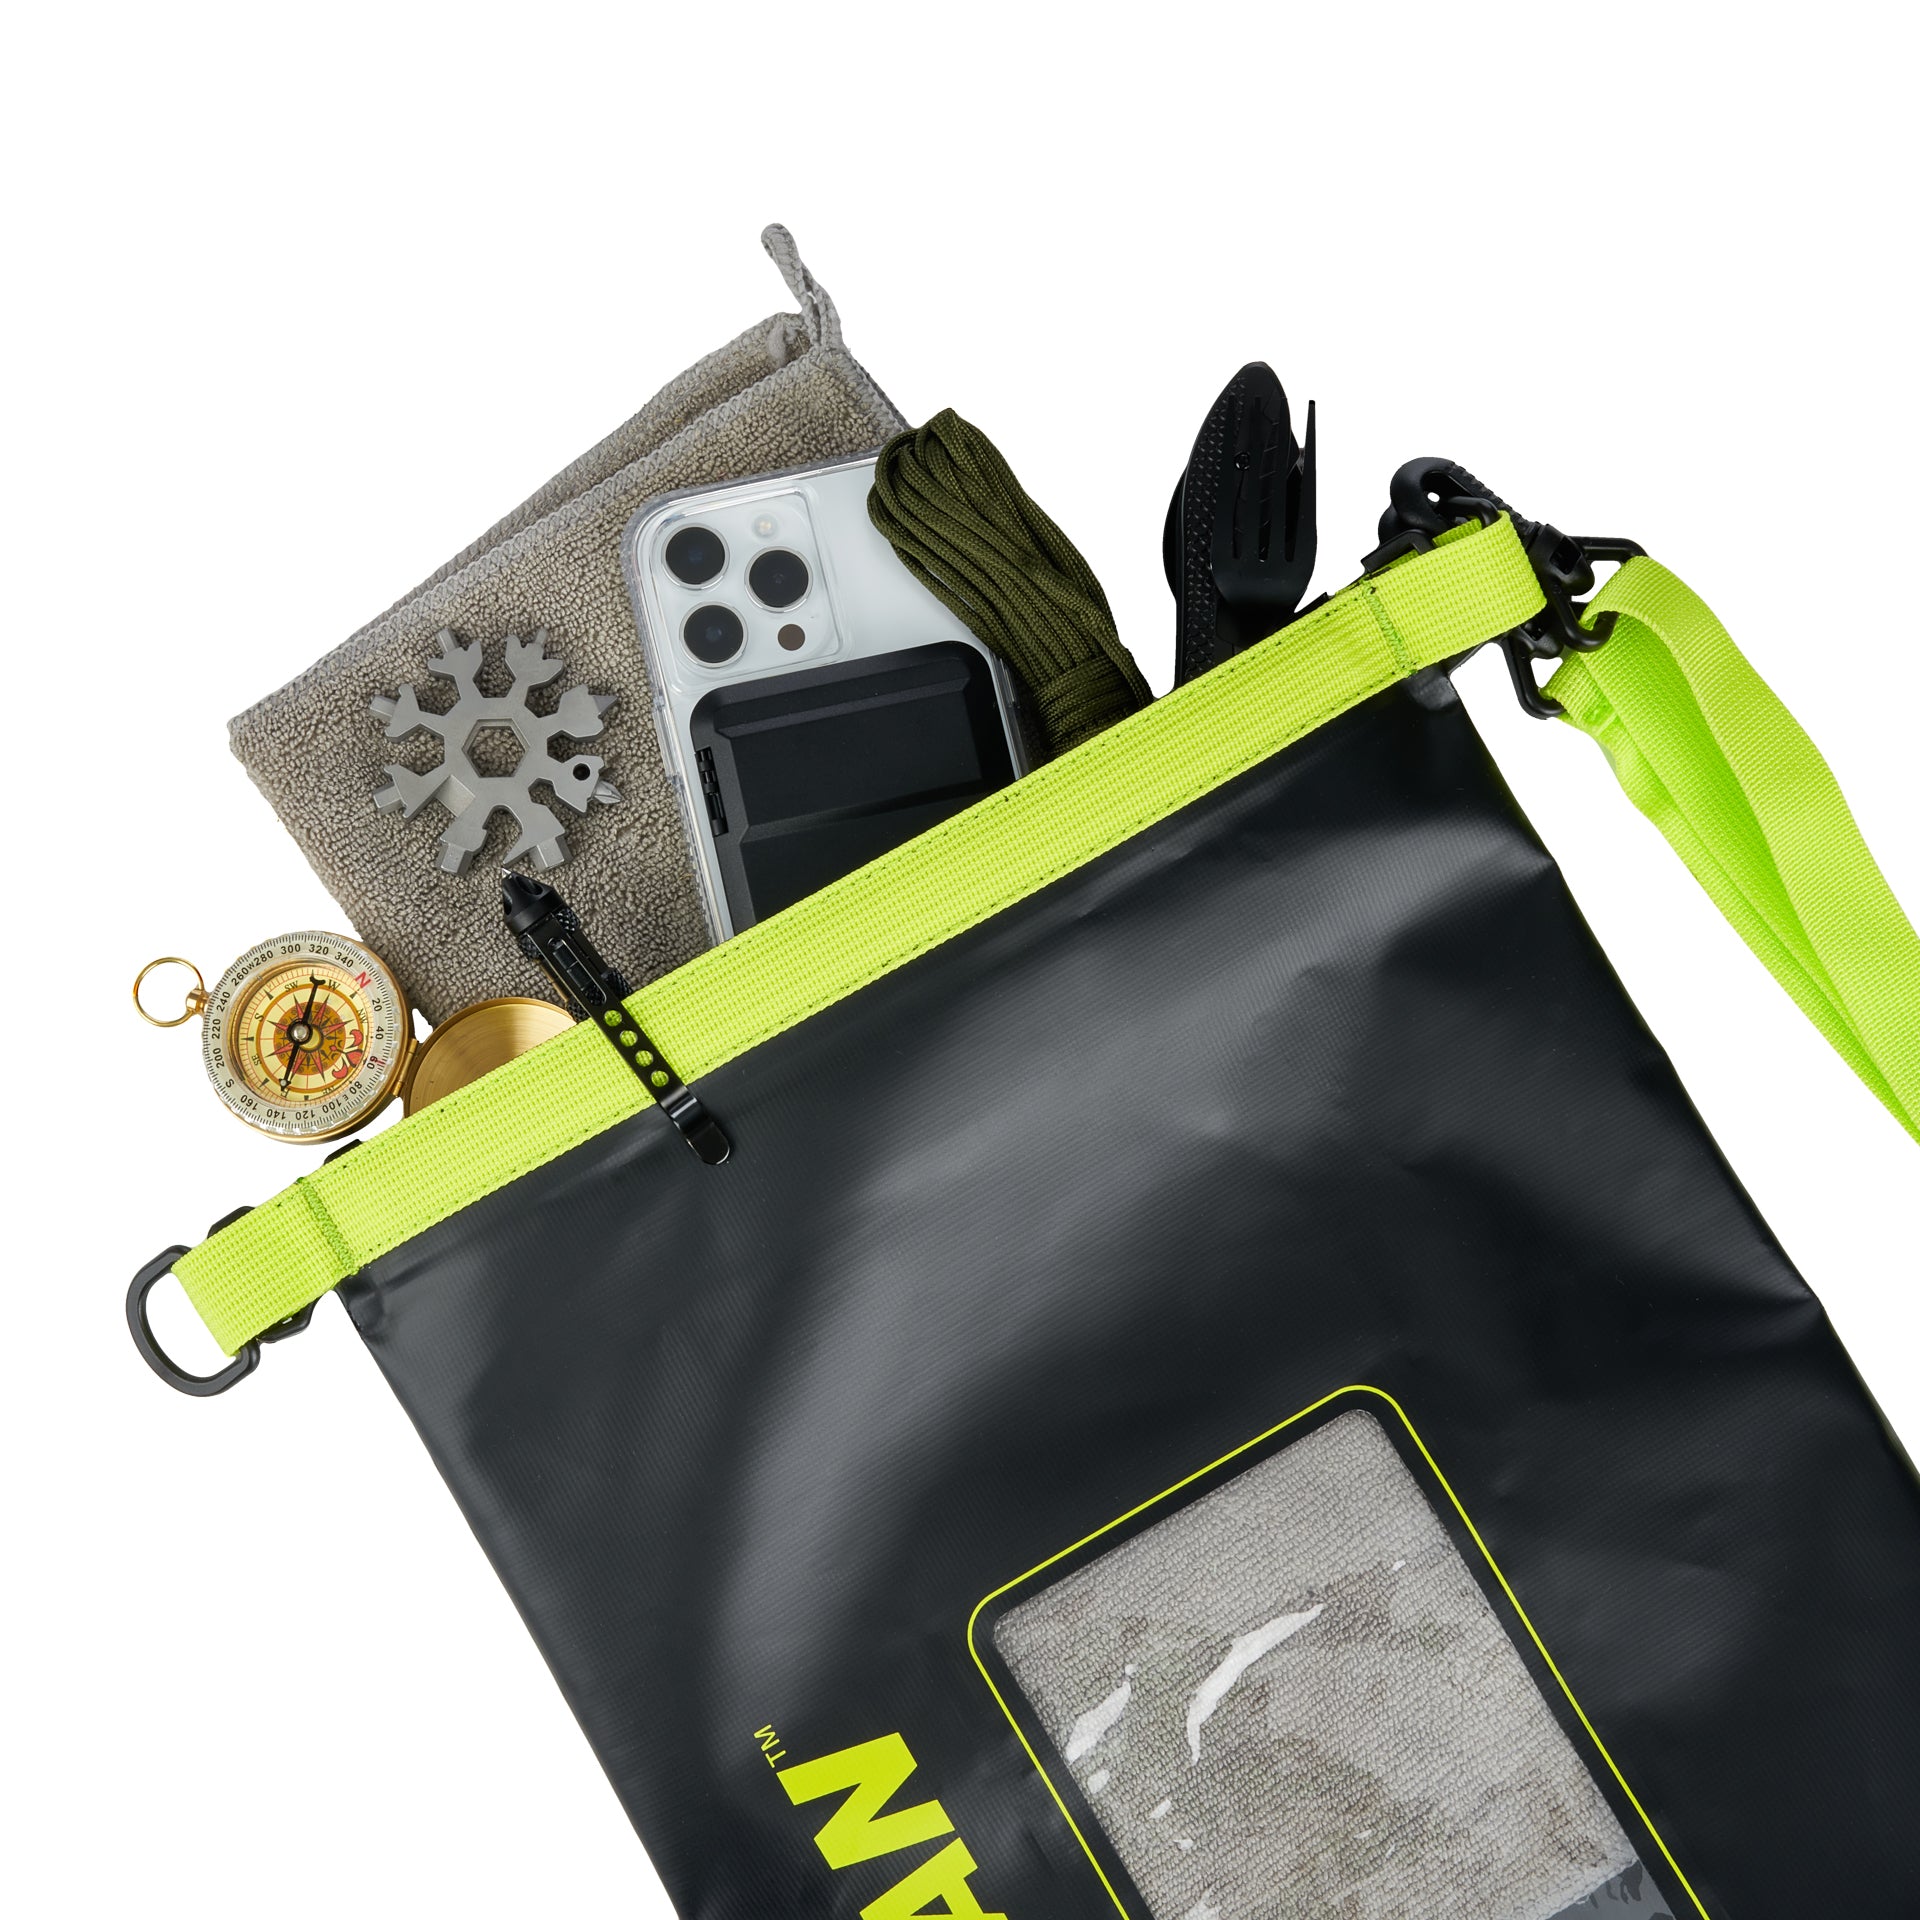 Marine Waterproof 5L Dry Bag (Black/Hi Vis Yellow) - Dry Bag